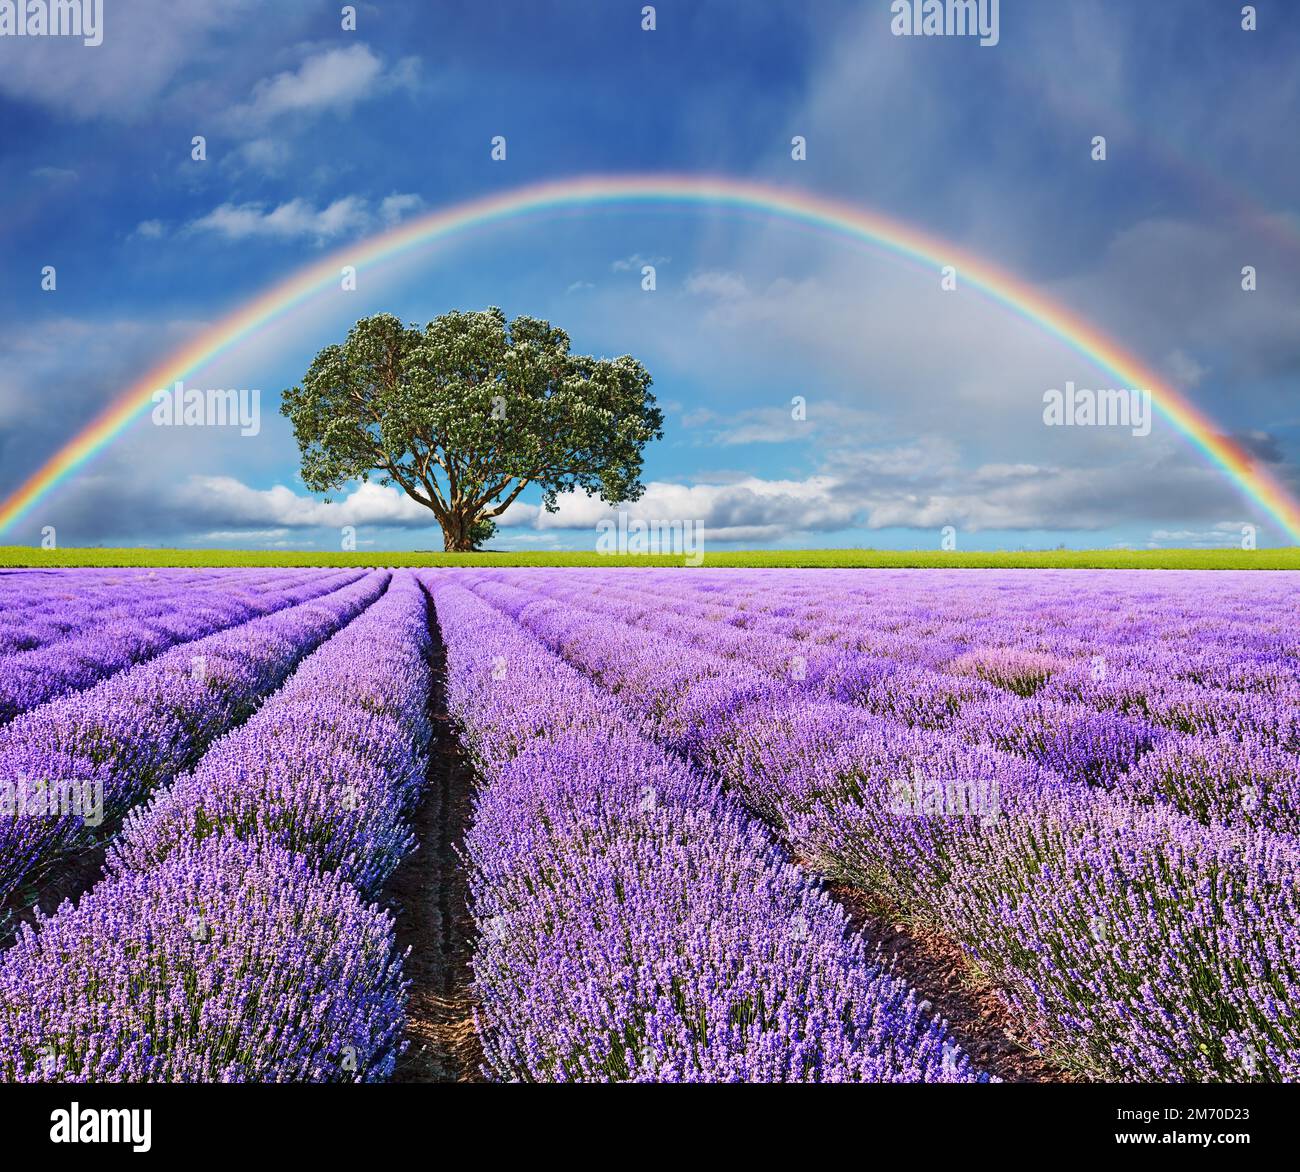 Landschaft mit Lavendelfeld, einsamem Baum und Regenbogen Stockfoto